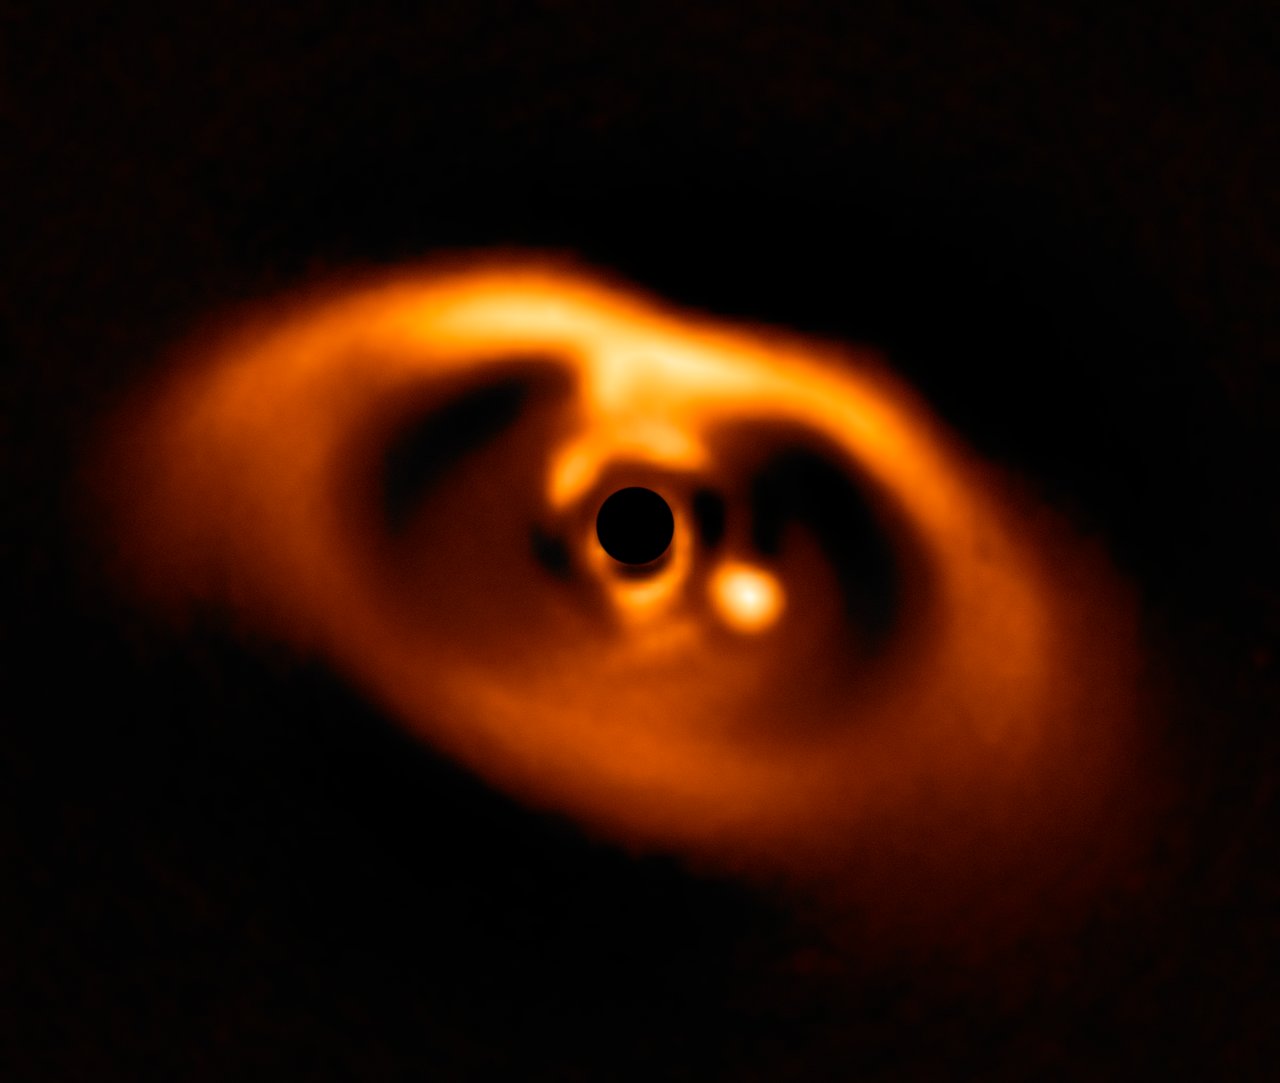 Imagen del planeta recién nacido PDS 70b (punto brillante). Foto: ESO/A. Müller et al.